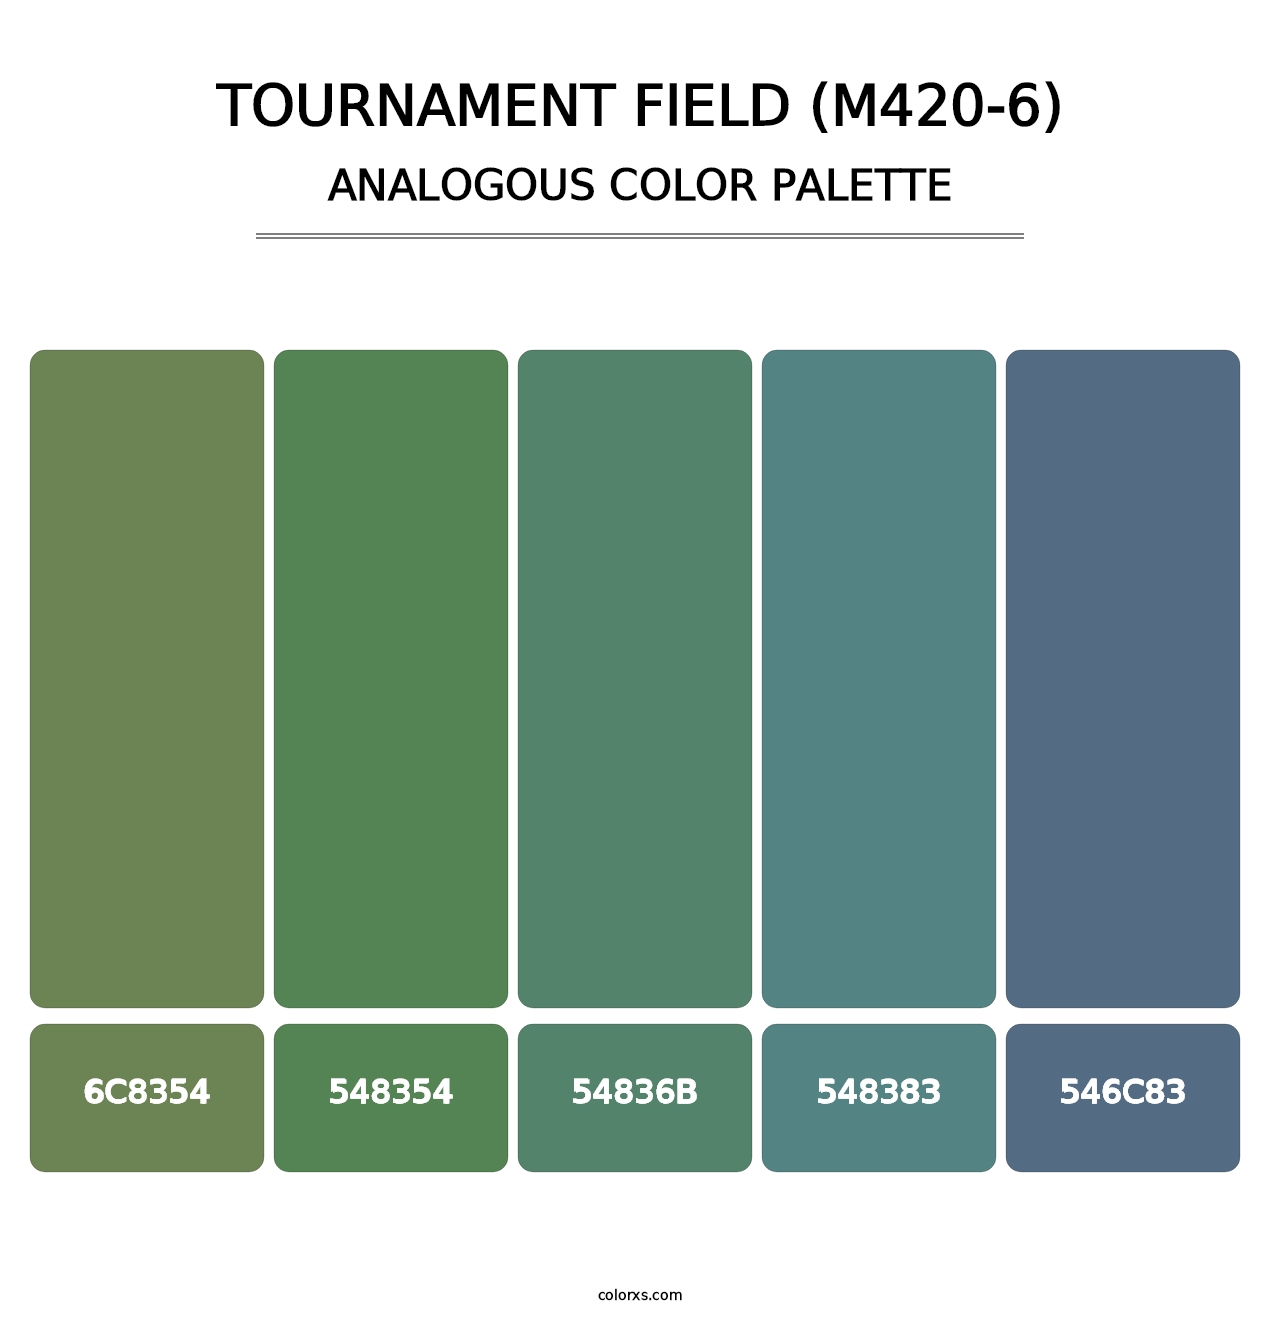 Tournament Field (M420-6) - Analogous Color Palette